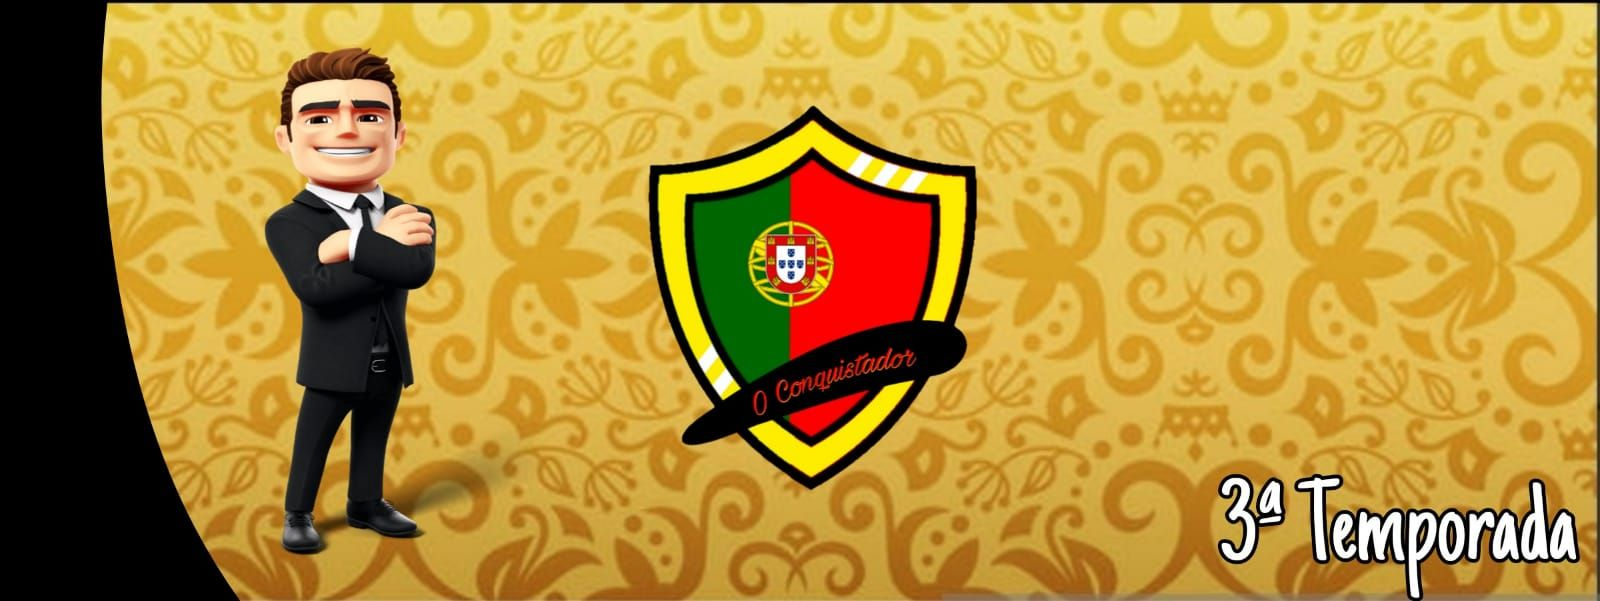 conquistador-3ed-logo